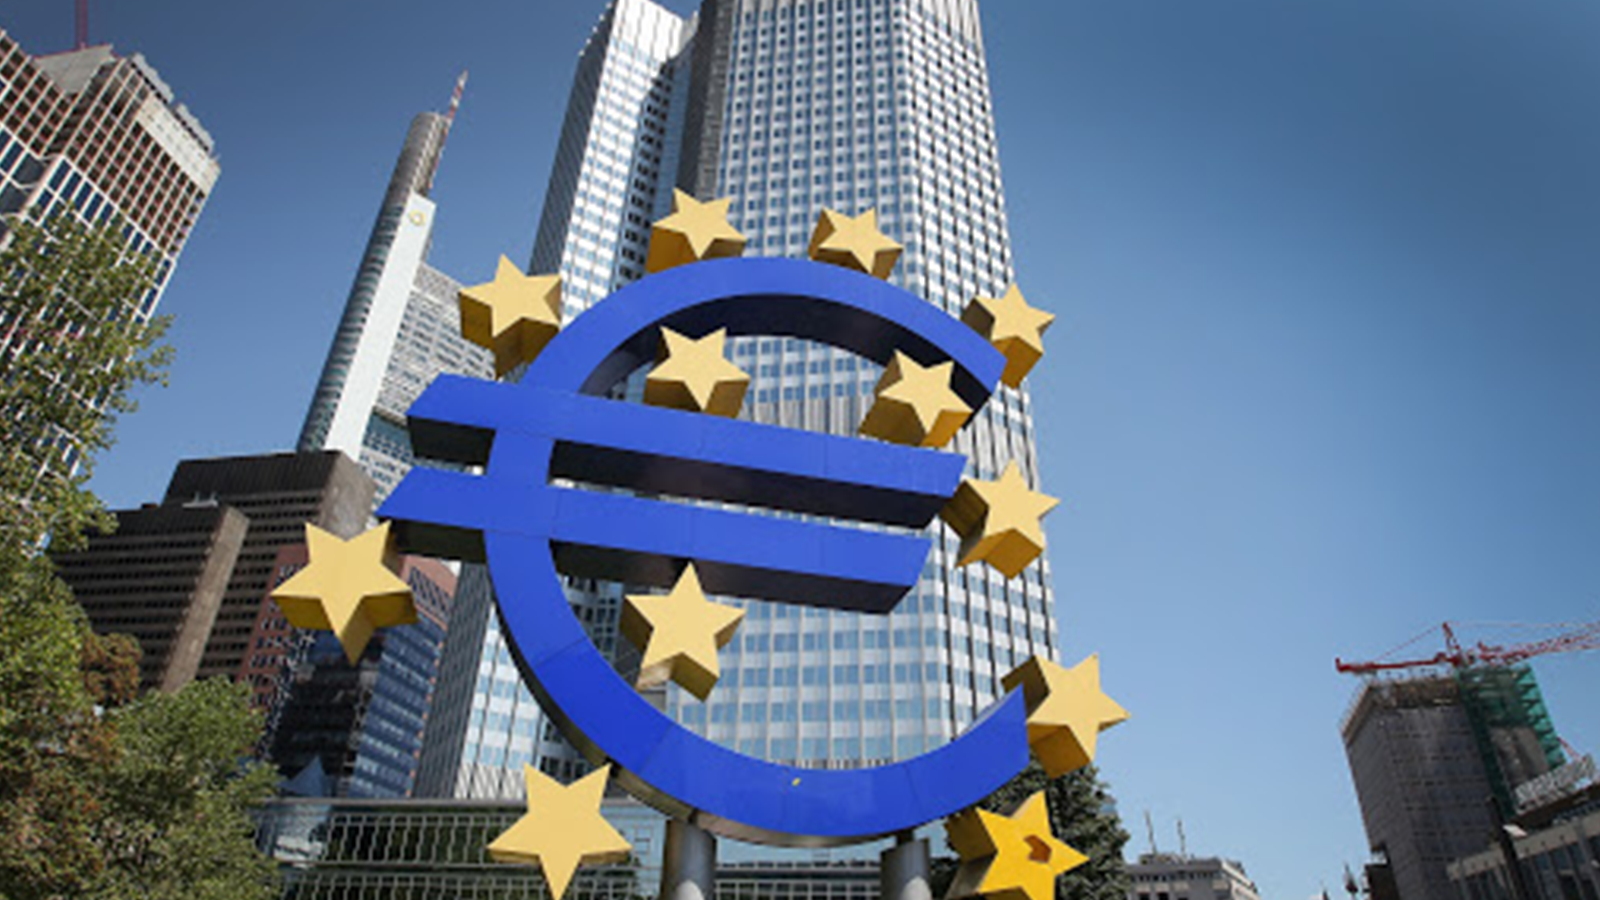 ΕΚΤ: Οι ΜΜΕ επιχειρήσεις έχουν δυσκολία πρόσβασης σε εξωτερική χρηματοδότηση